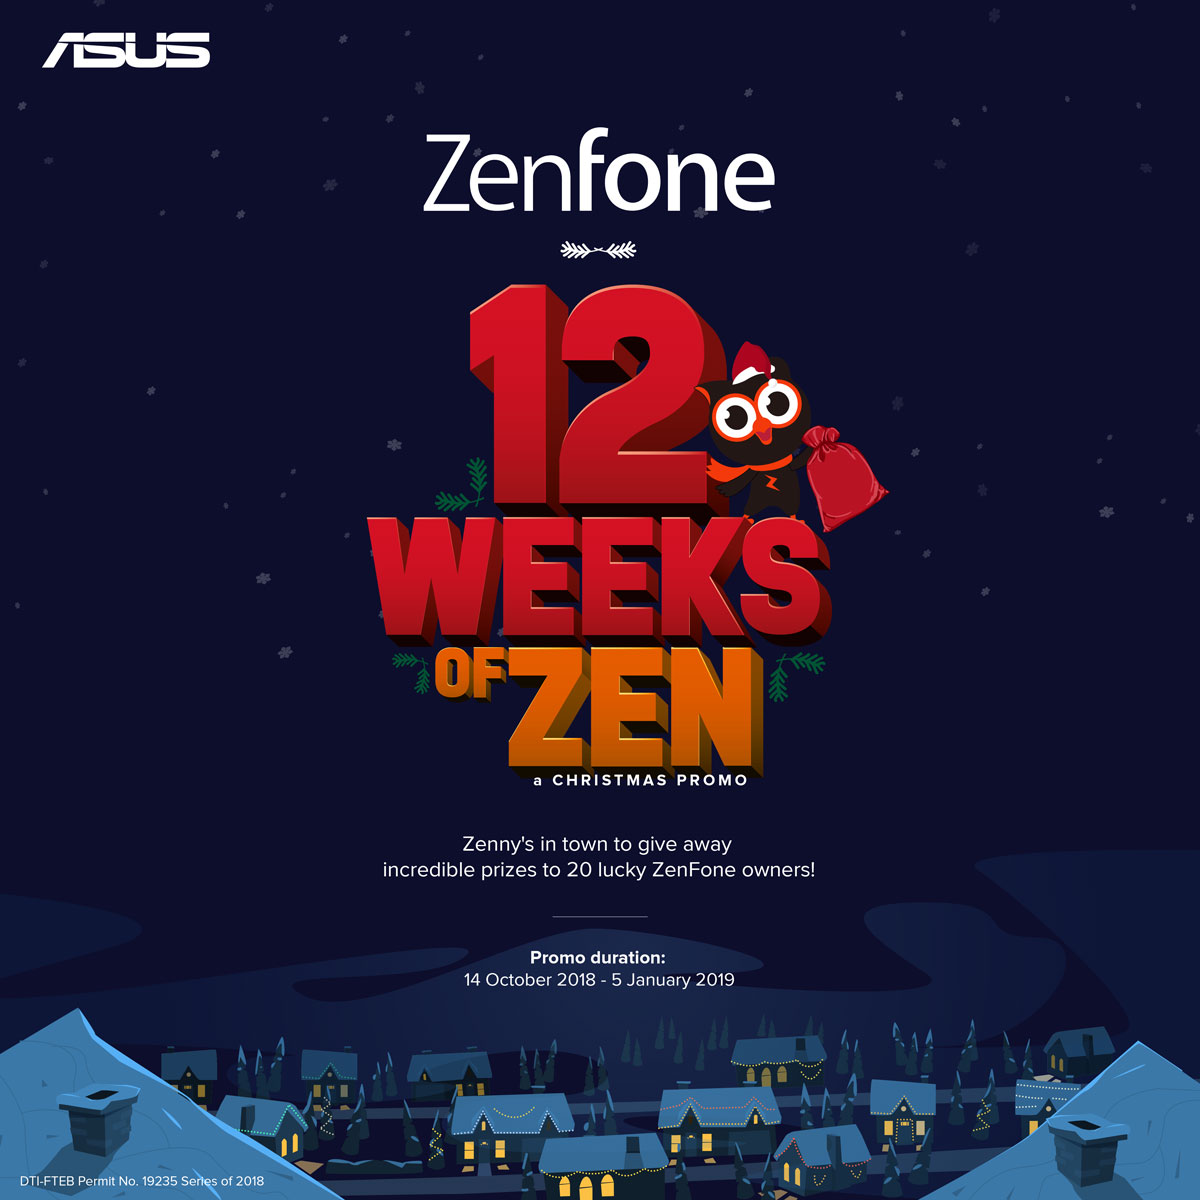 ZenFone Series - 12 Weeks Of Zen